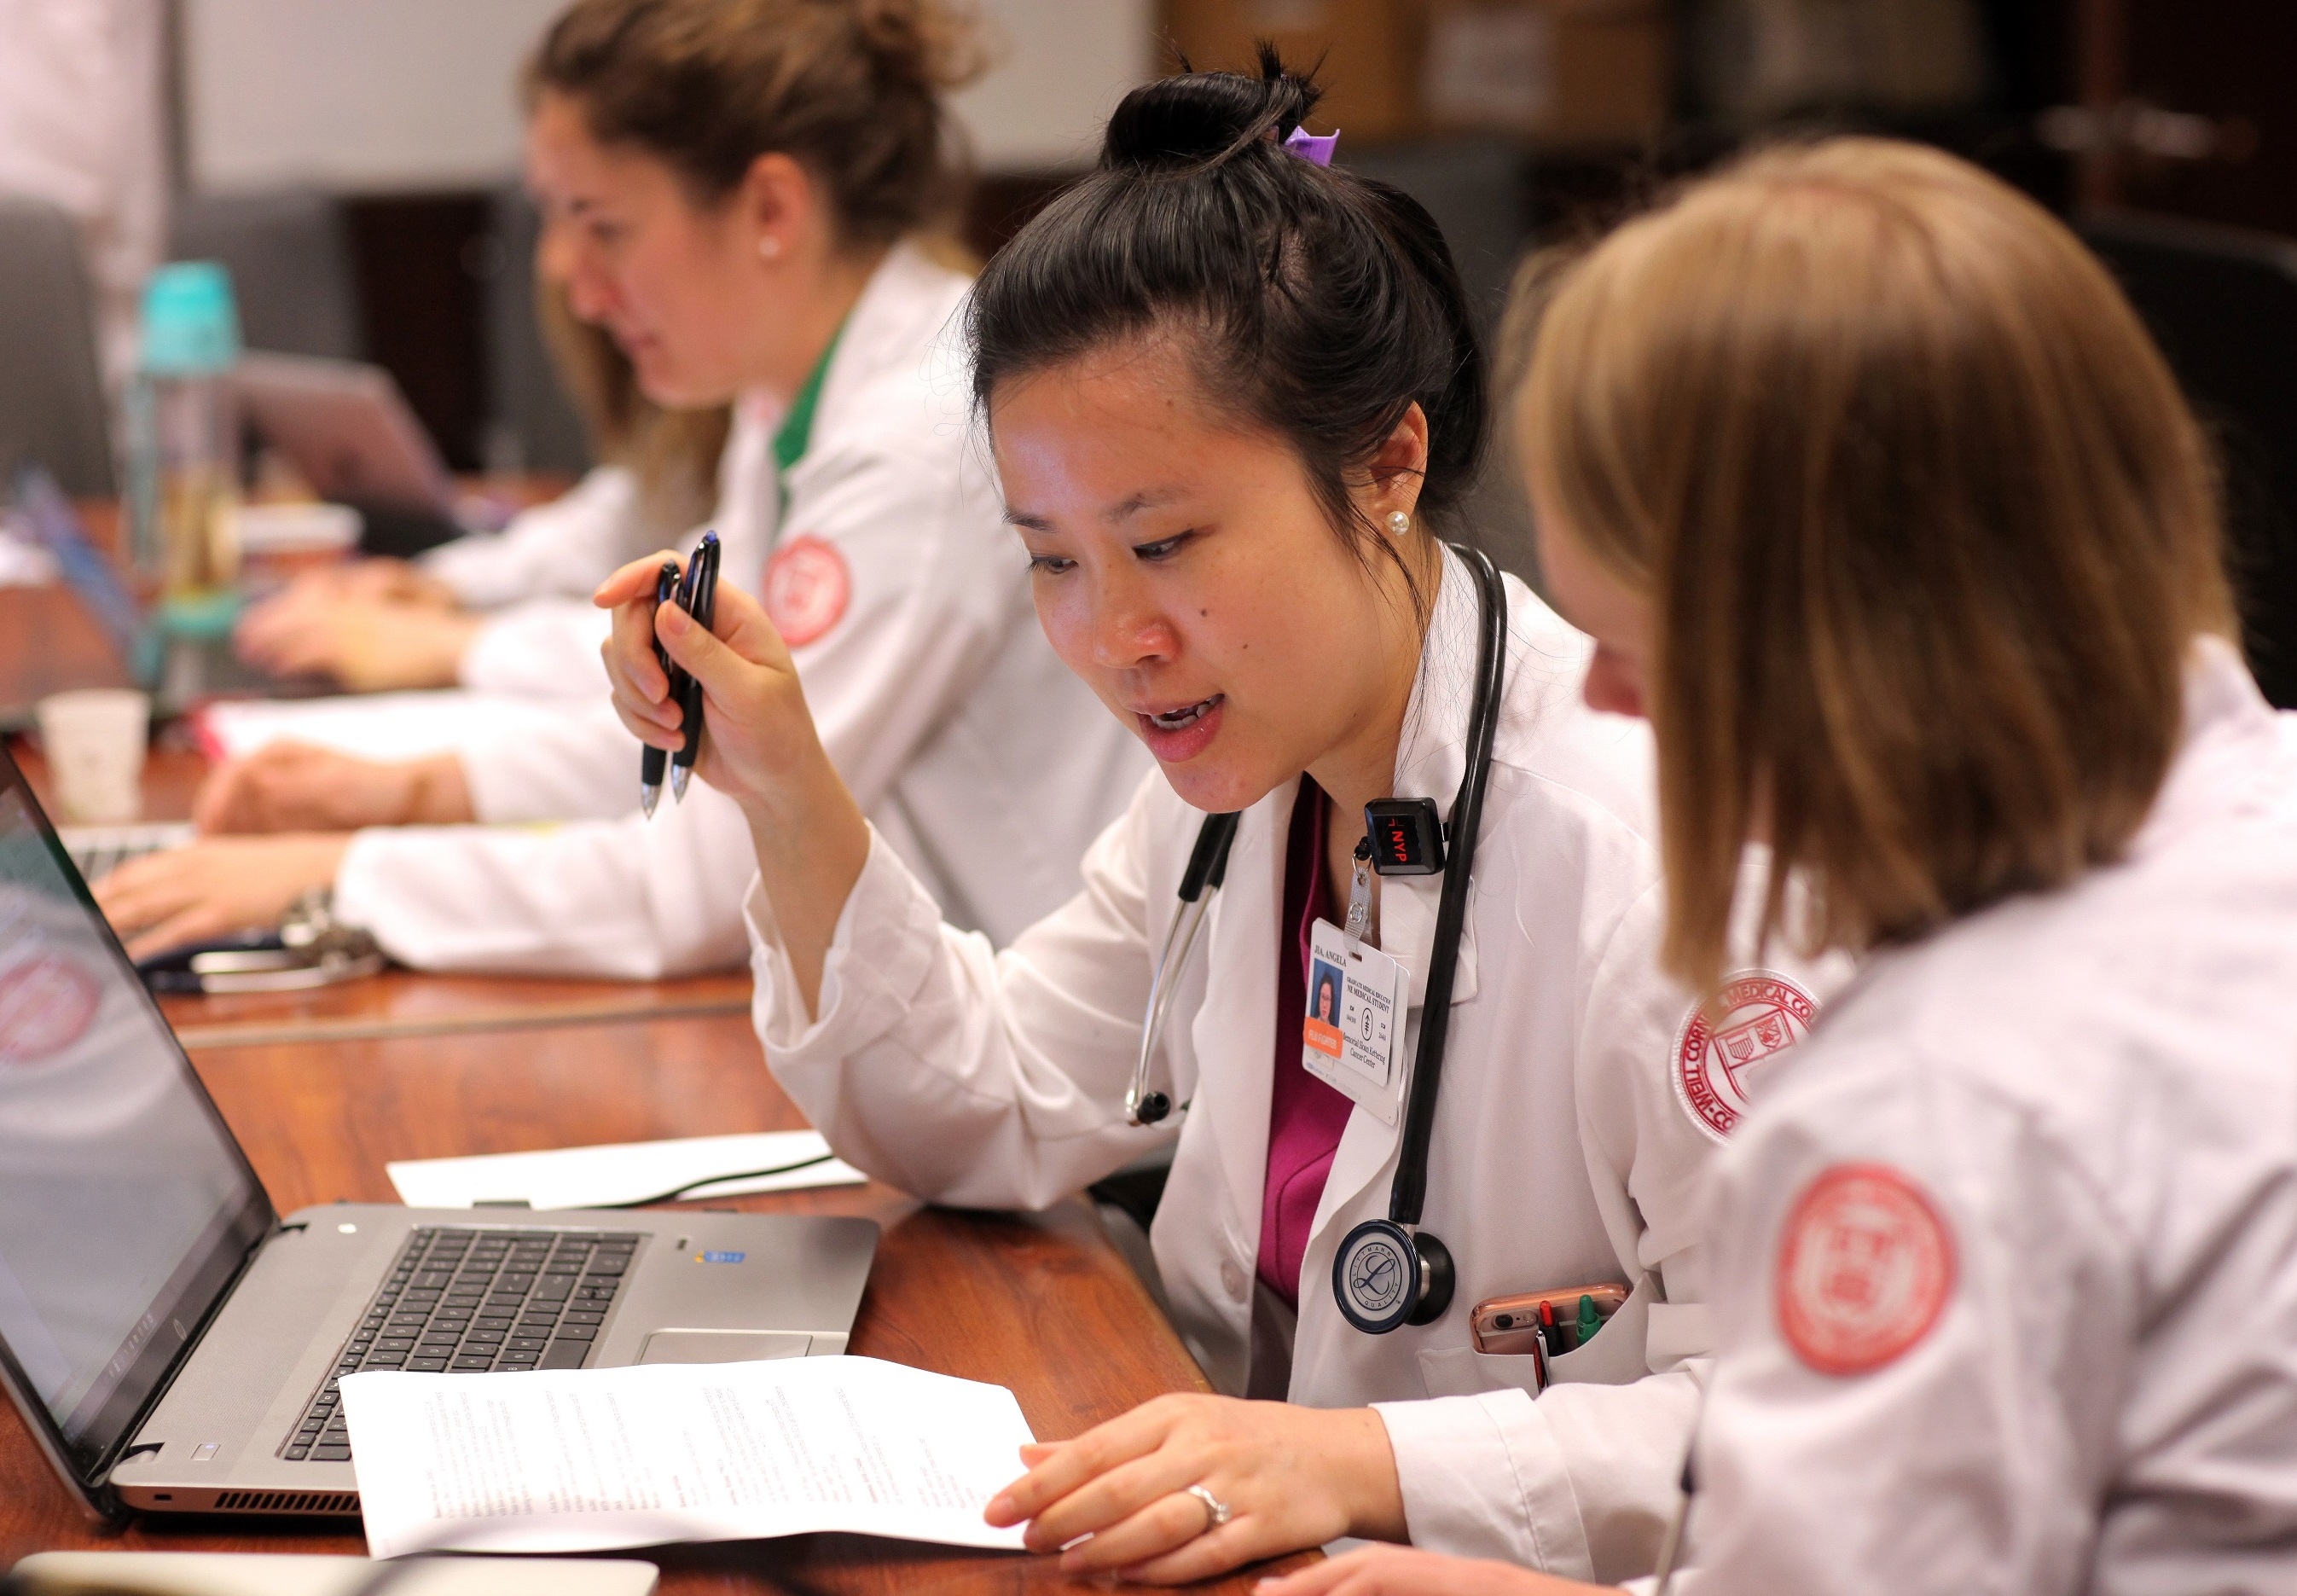 Female doctors studying. Credit: John Abbott